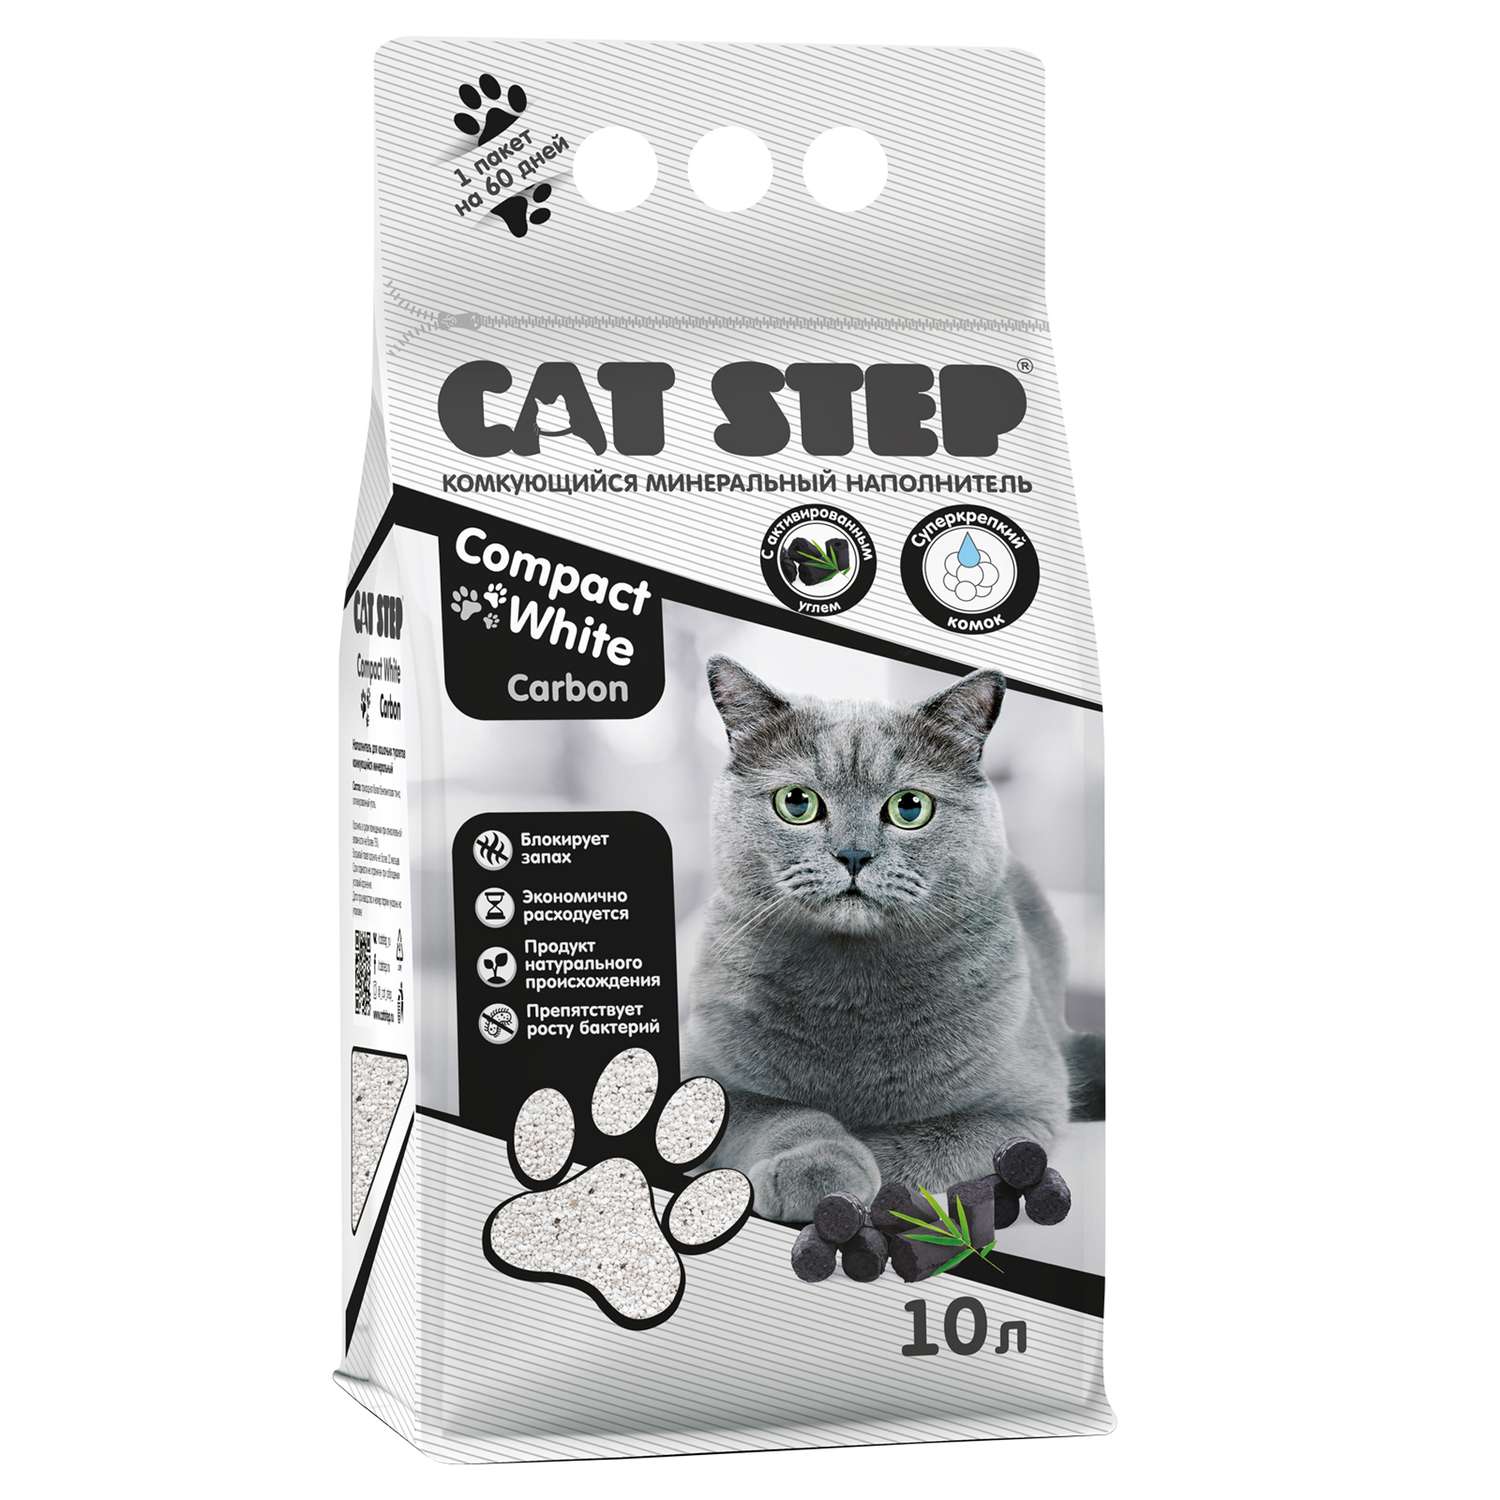 Наполнитель для кошек Cat Step Compact White Carbon комкующийся минеральный 10л - фото 1